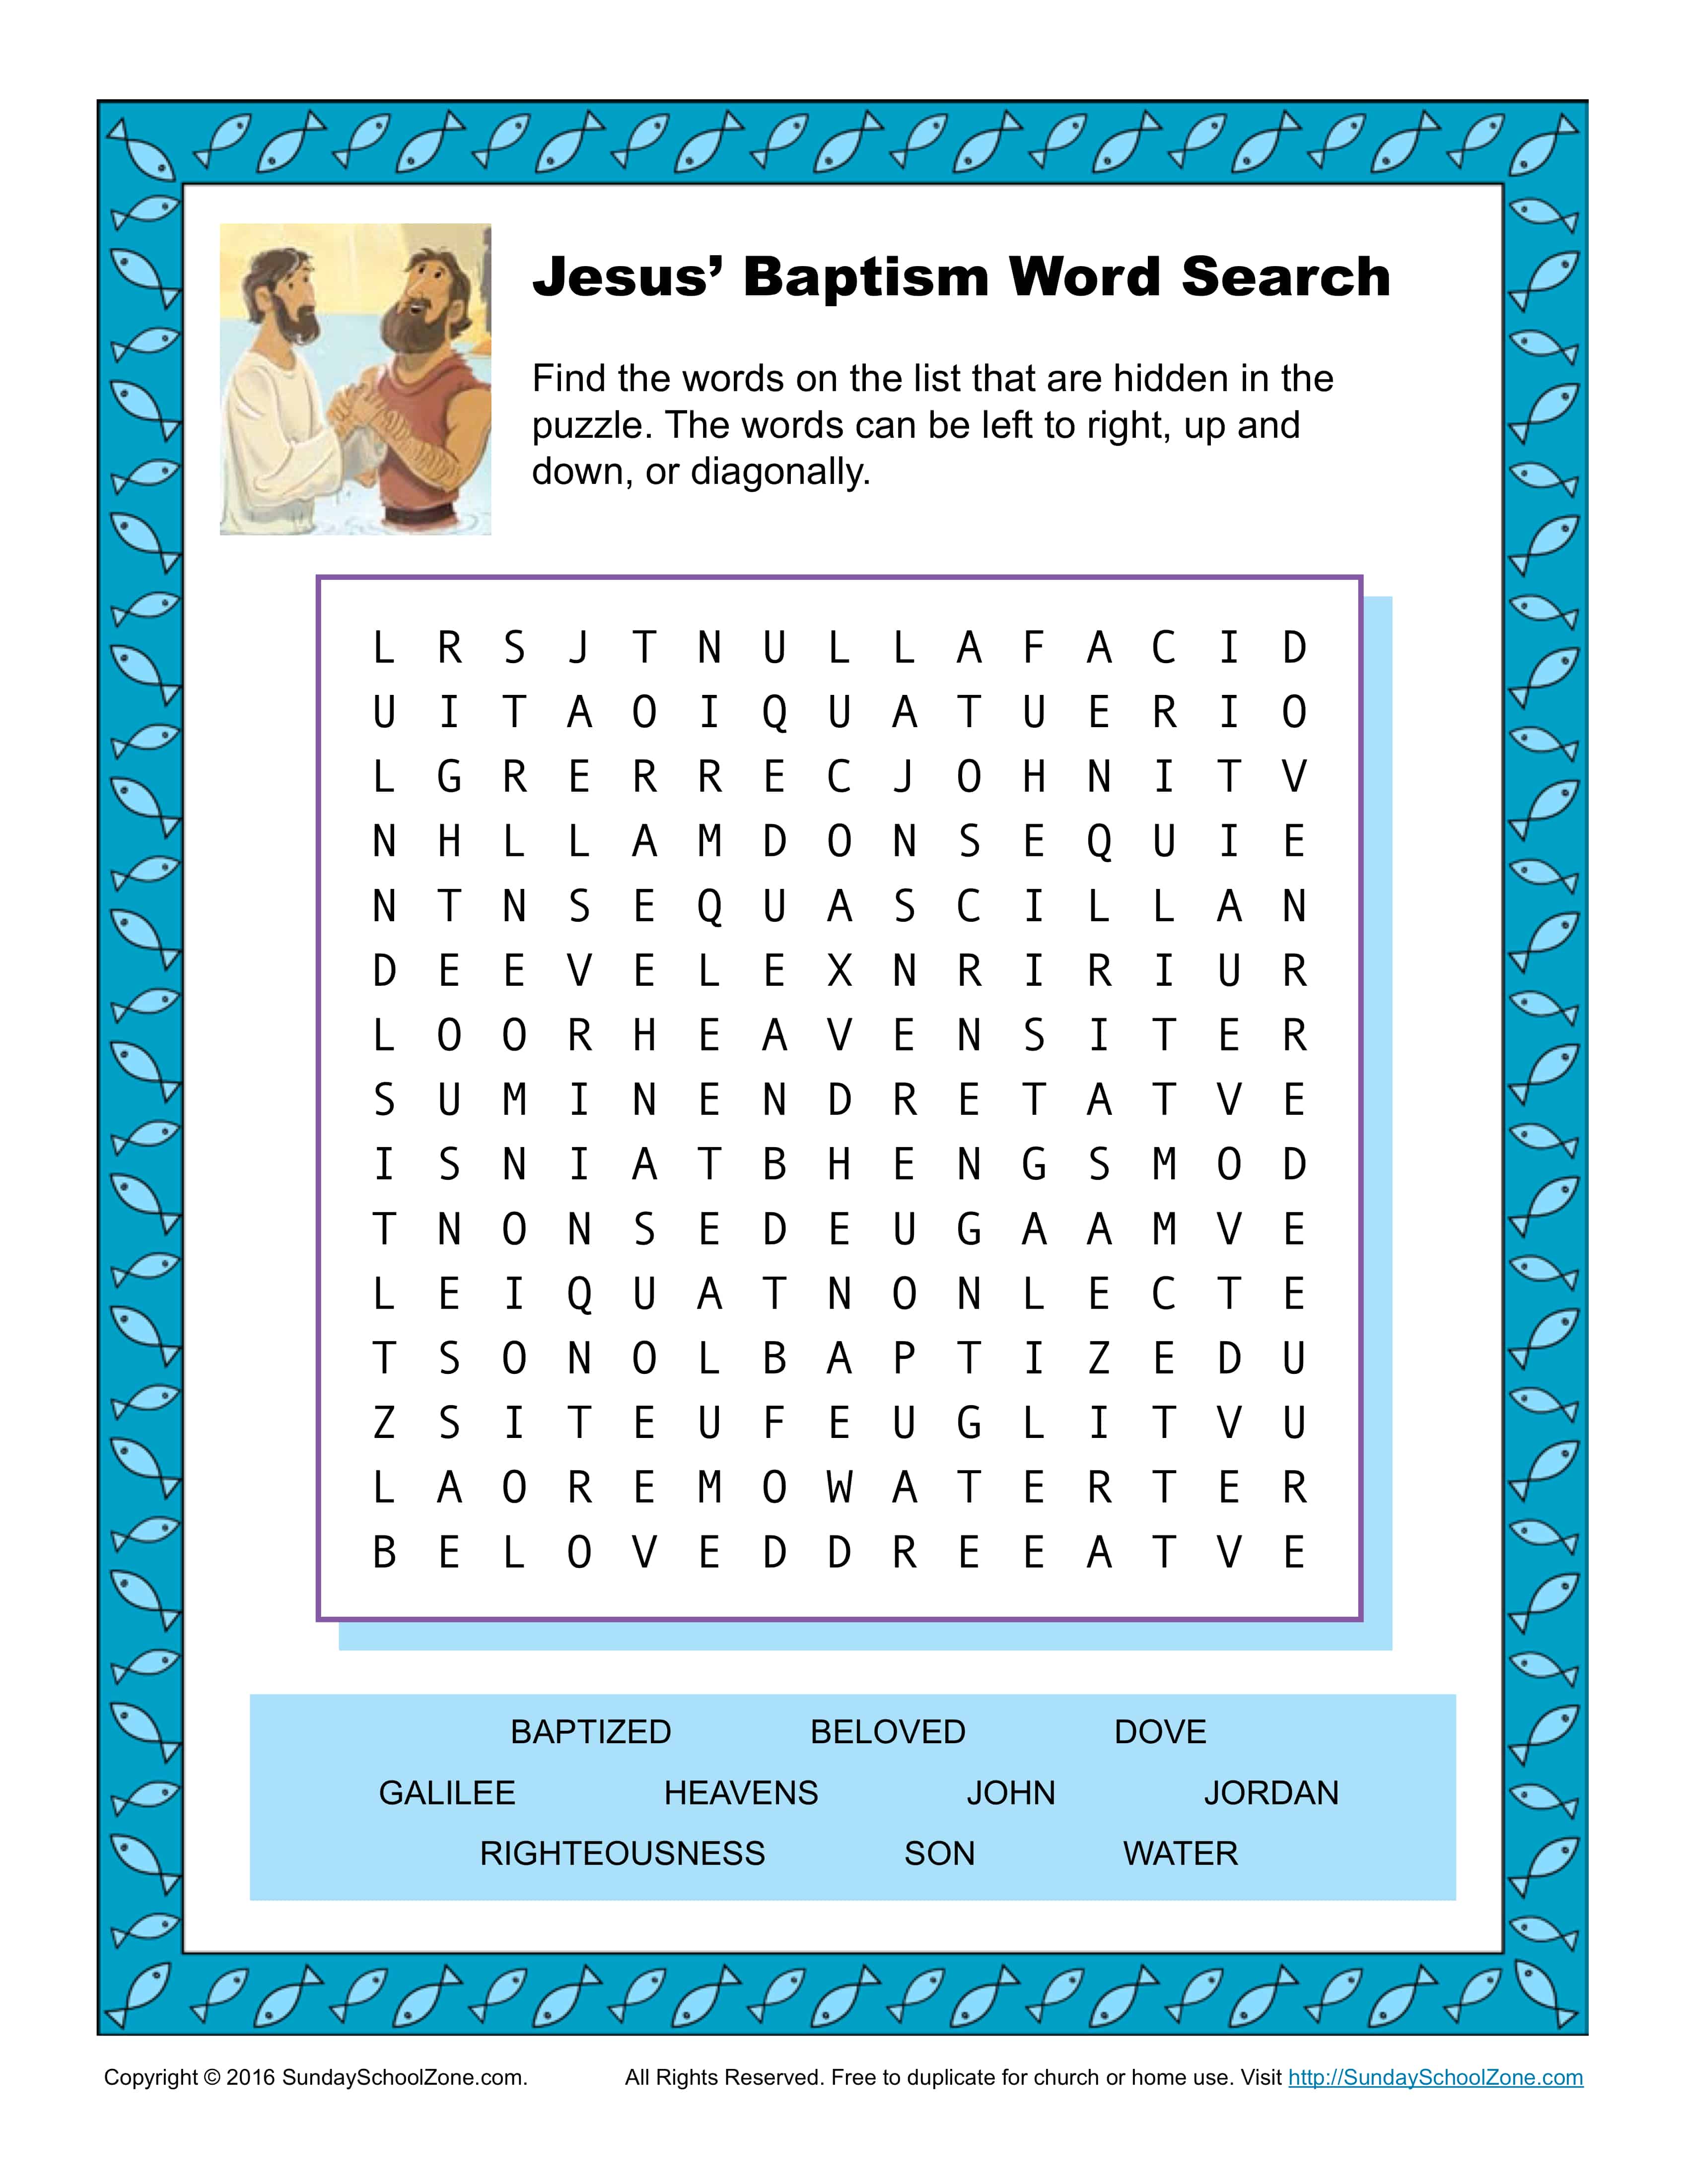 Jesus' Baptism Word Search Activity - Children's Bible Activities